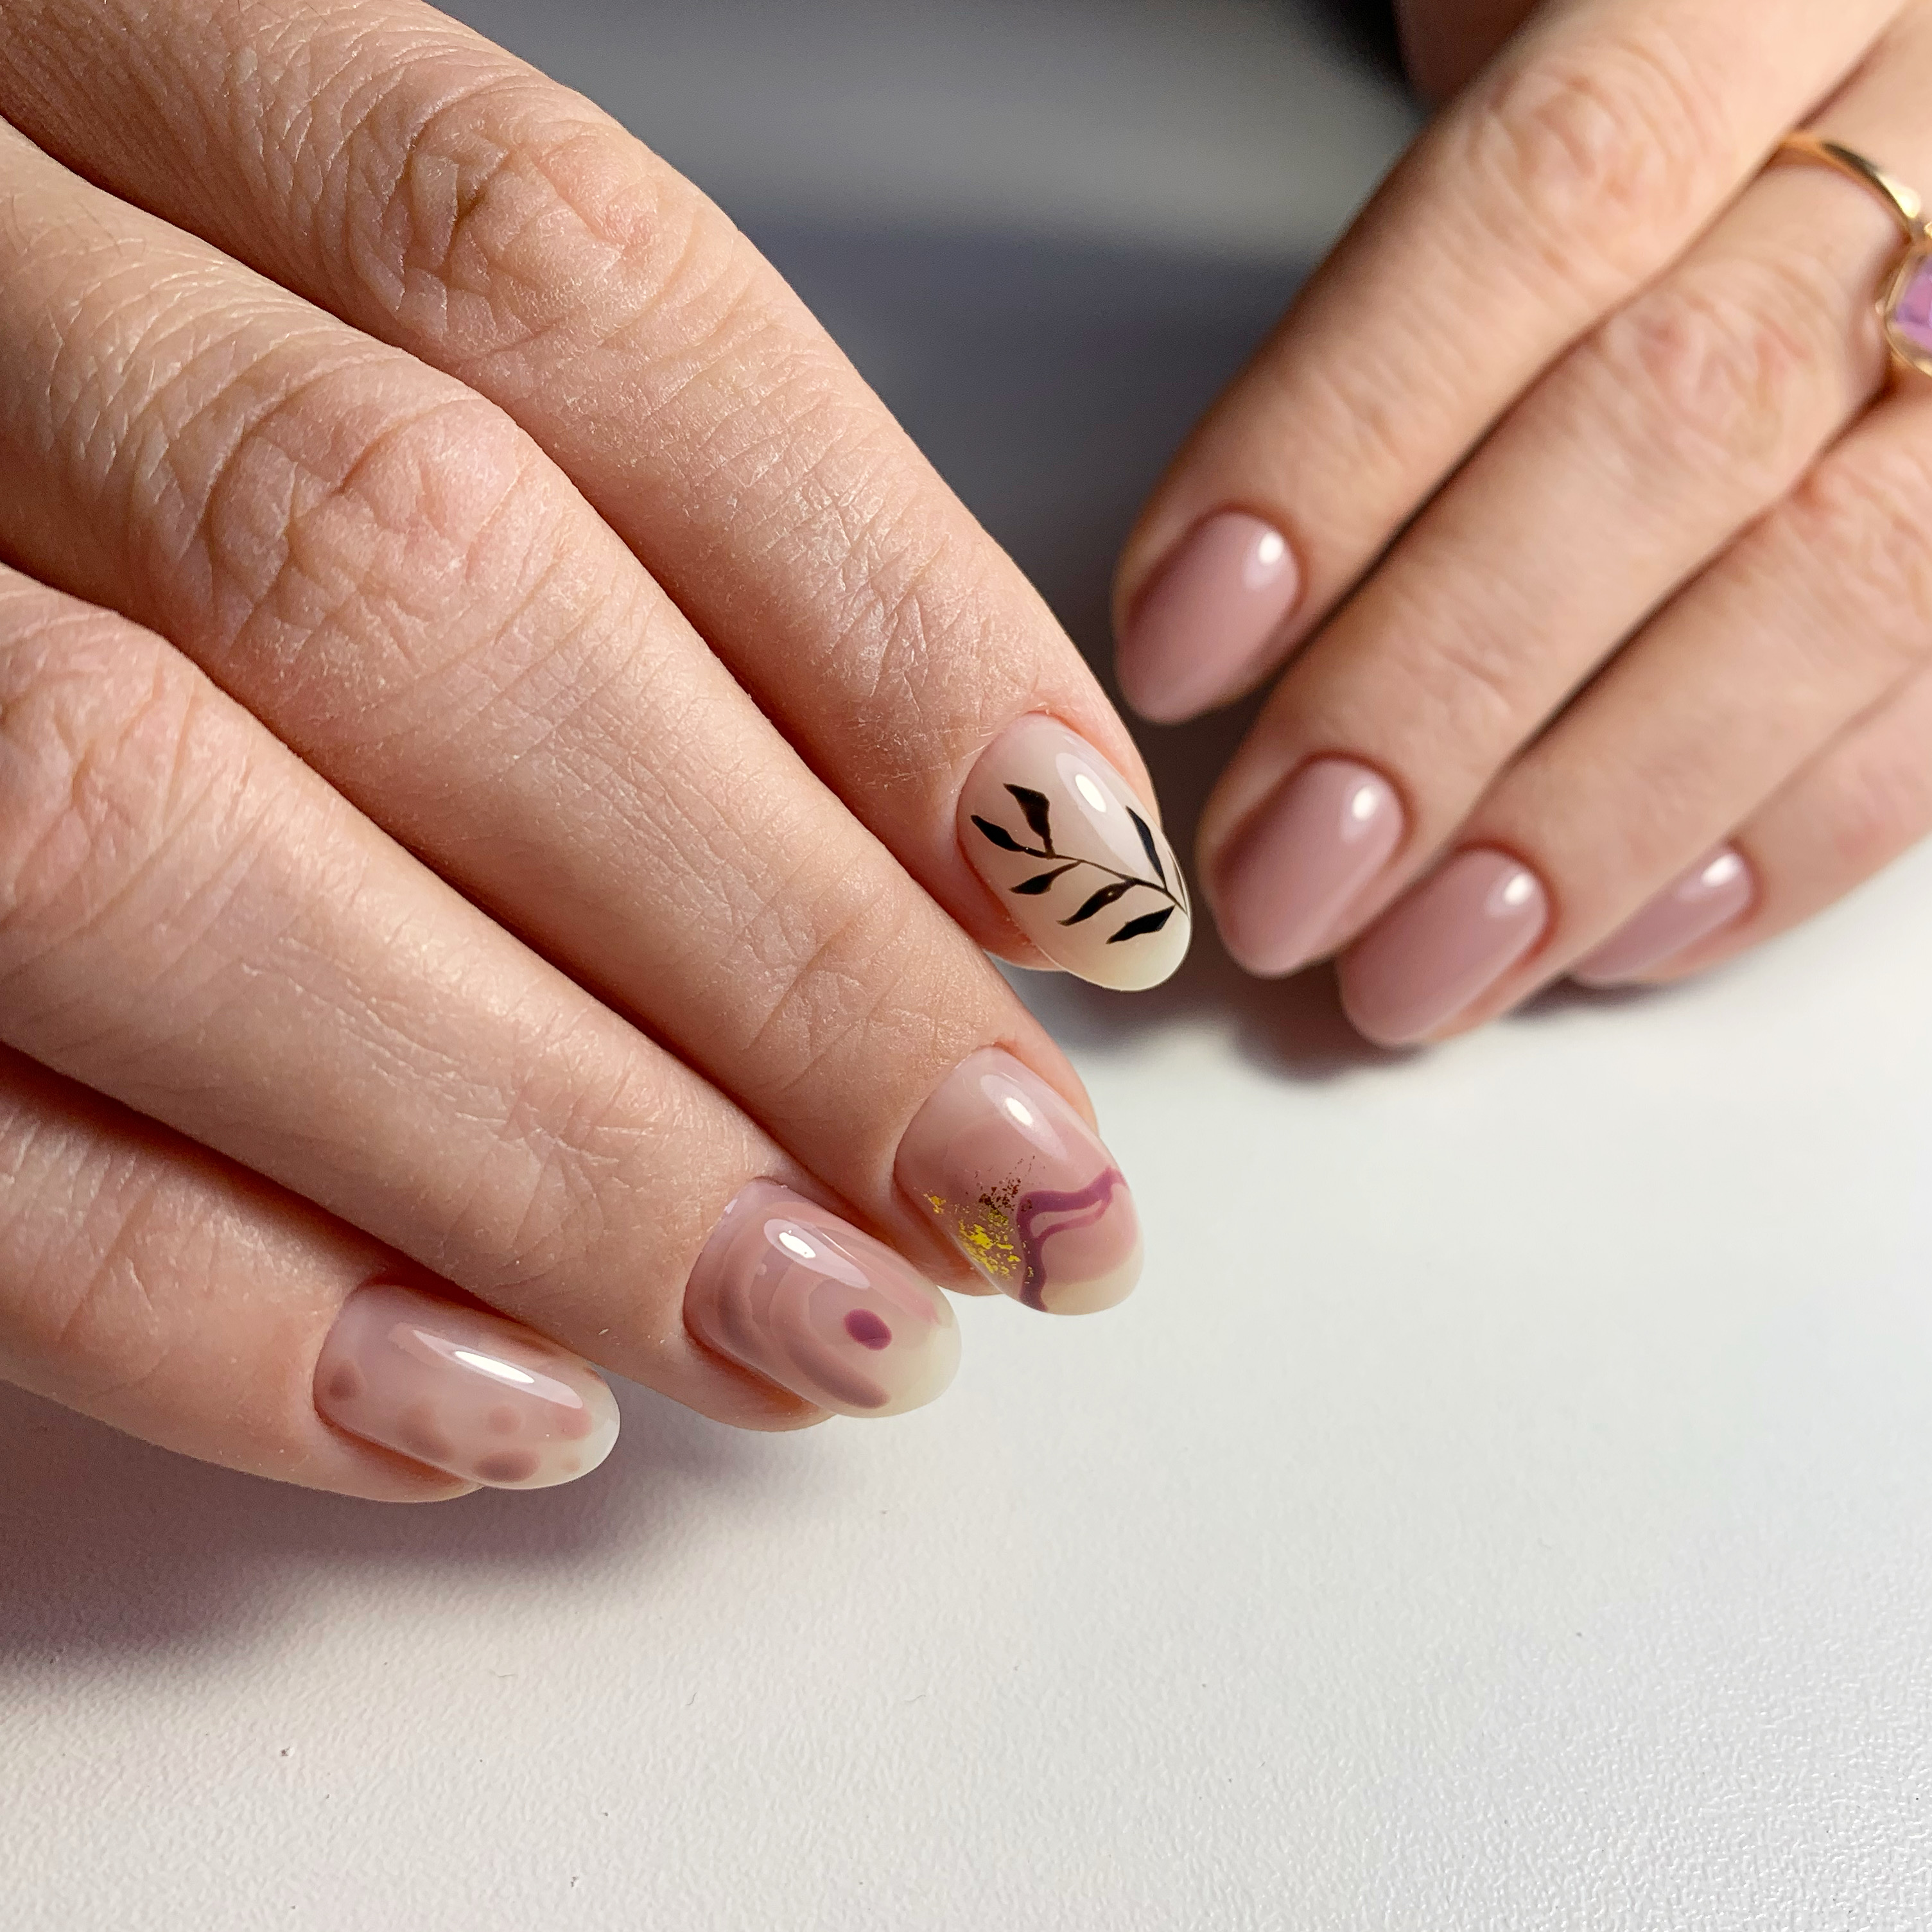 Нюдовый маникюр с растительным рисунком и золотой фольгой на короткие ногти.